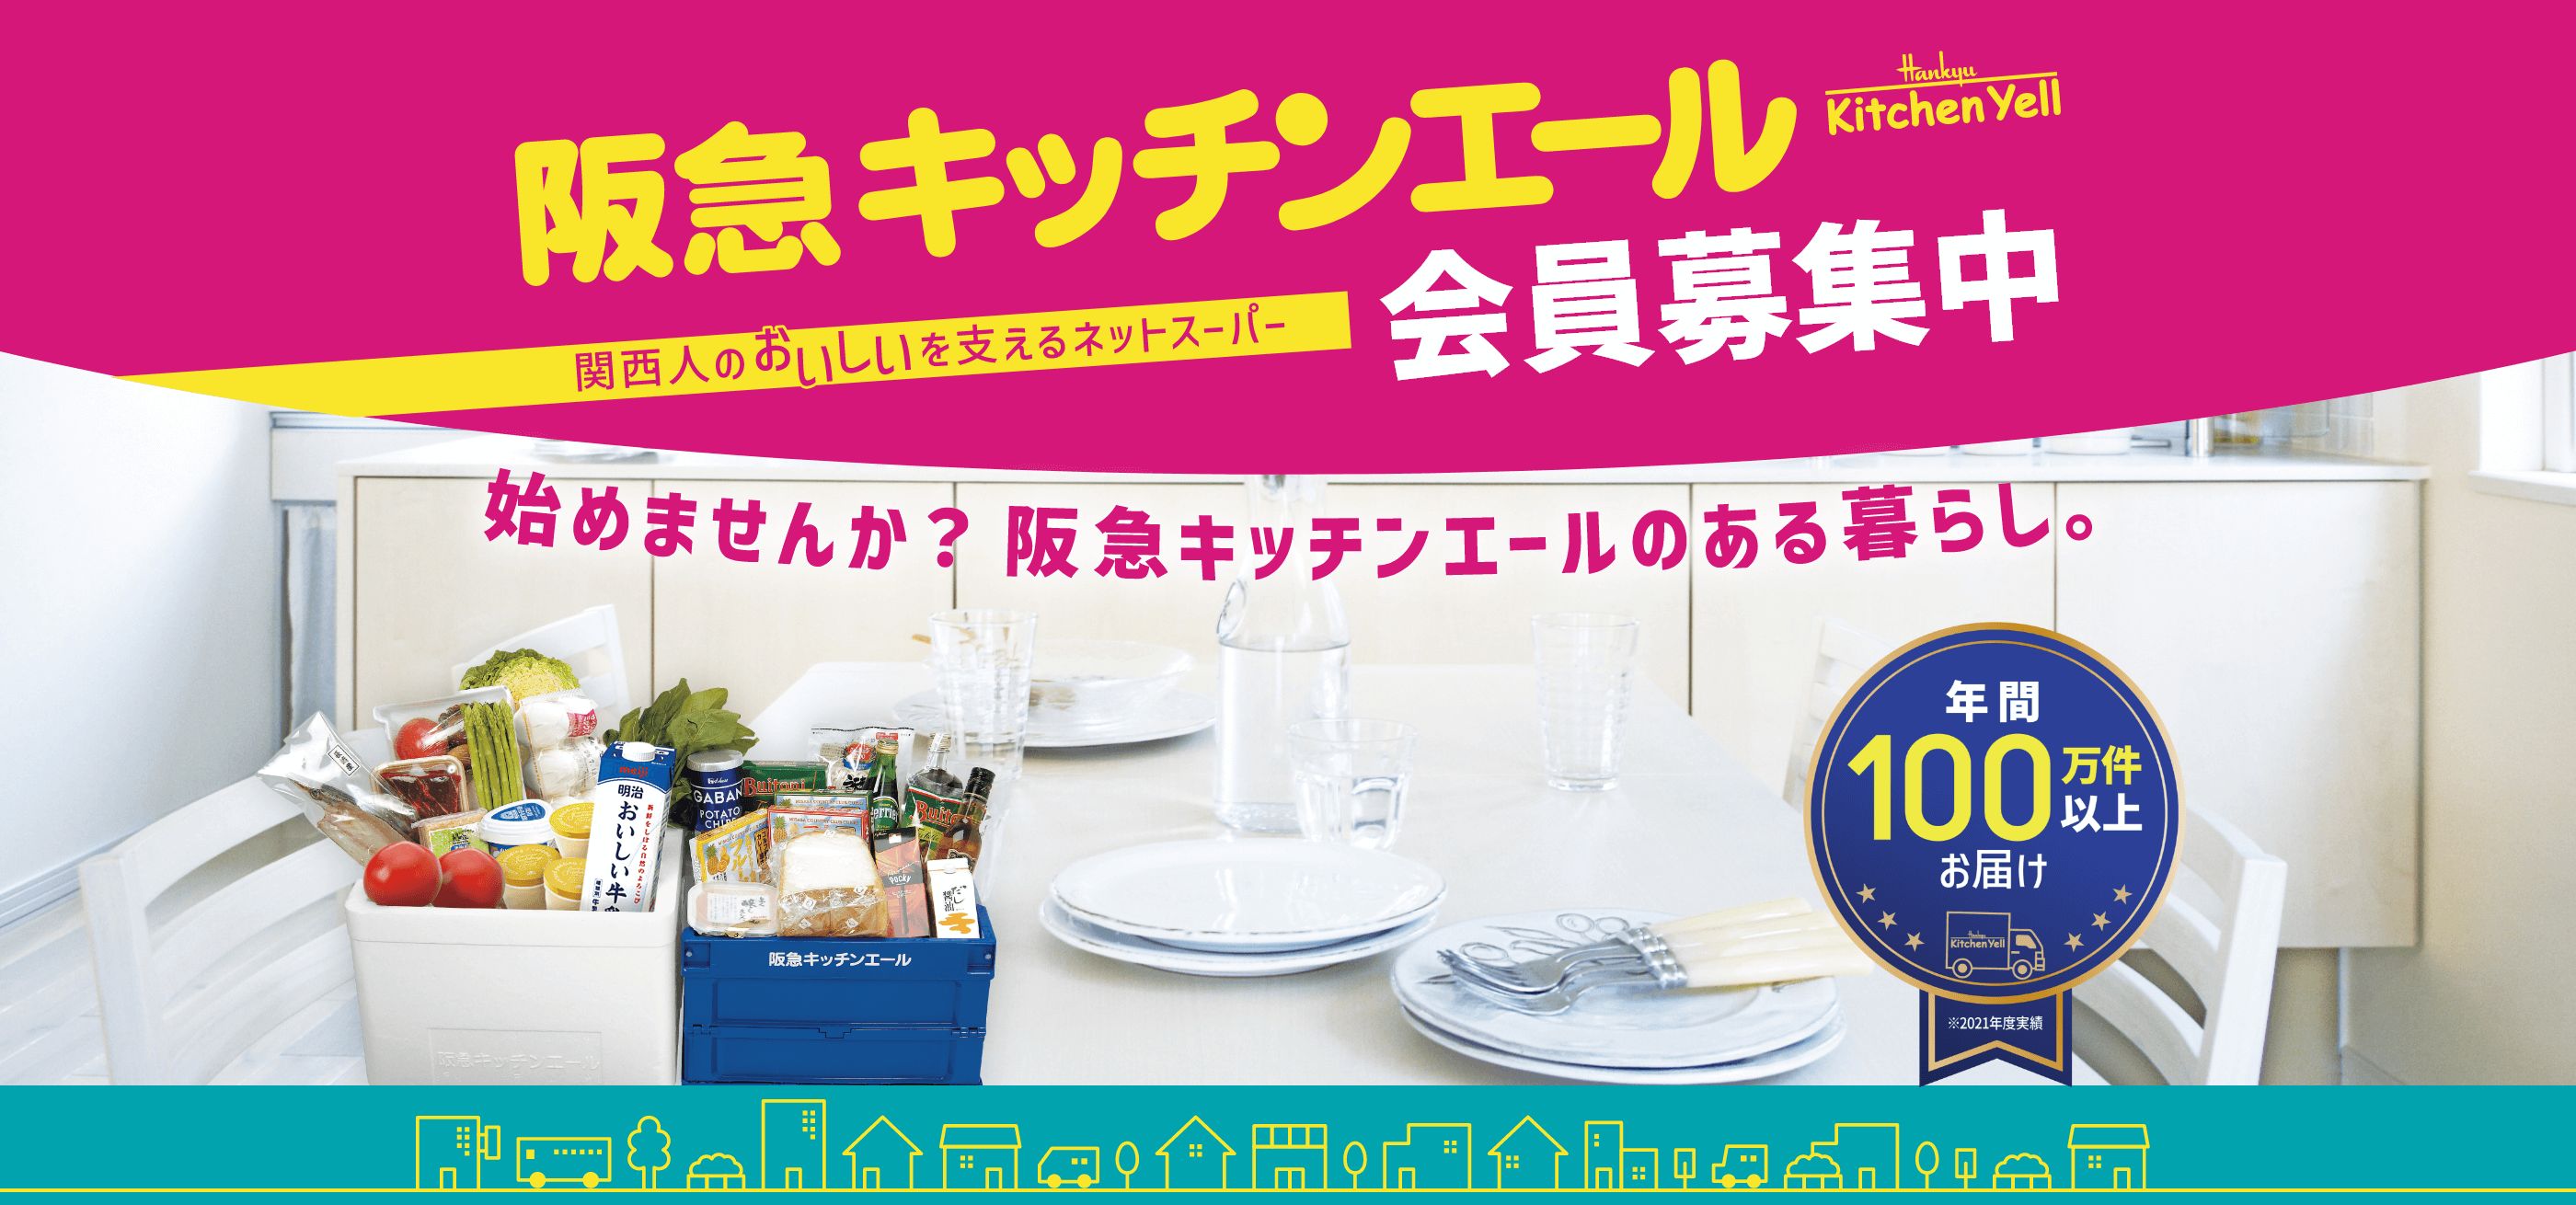 関西人のおいしいを支えるネットスーパー阪急キッチンエール。
				会員募集中。始めませんか？阪急キッチンエールのある暮らし。年間100万件以上お届け